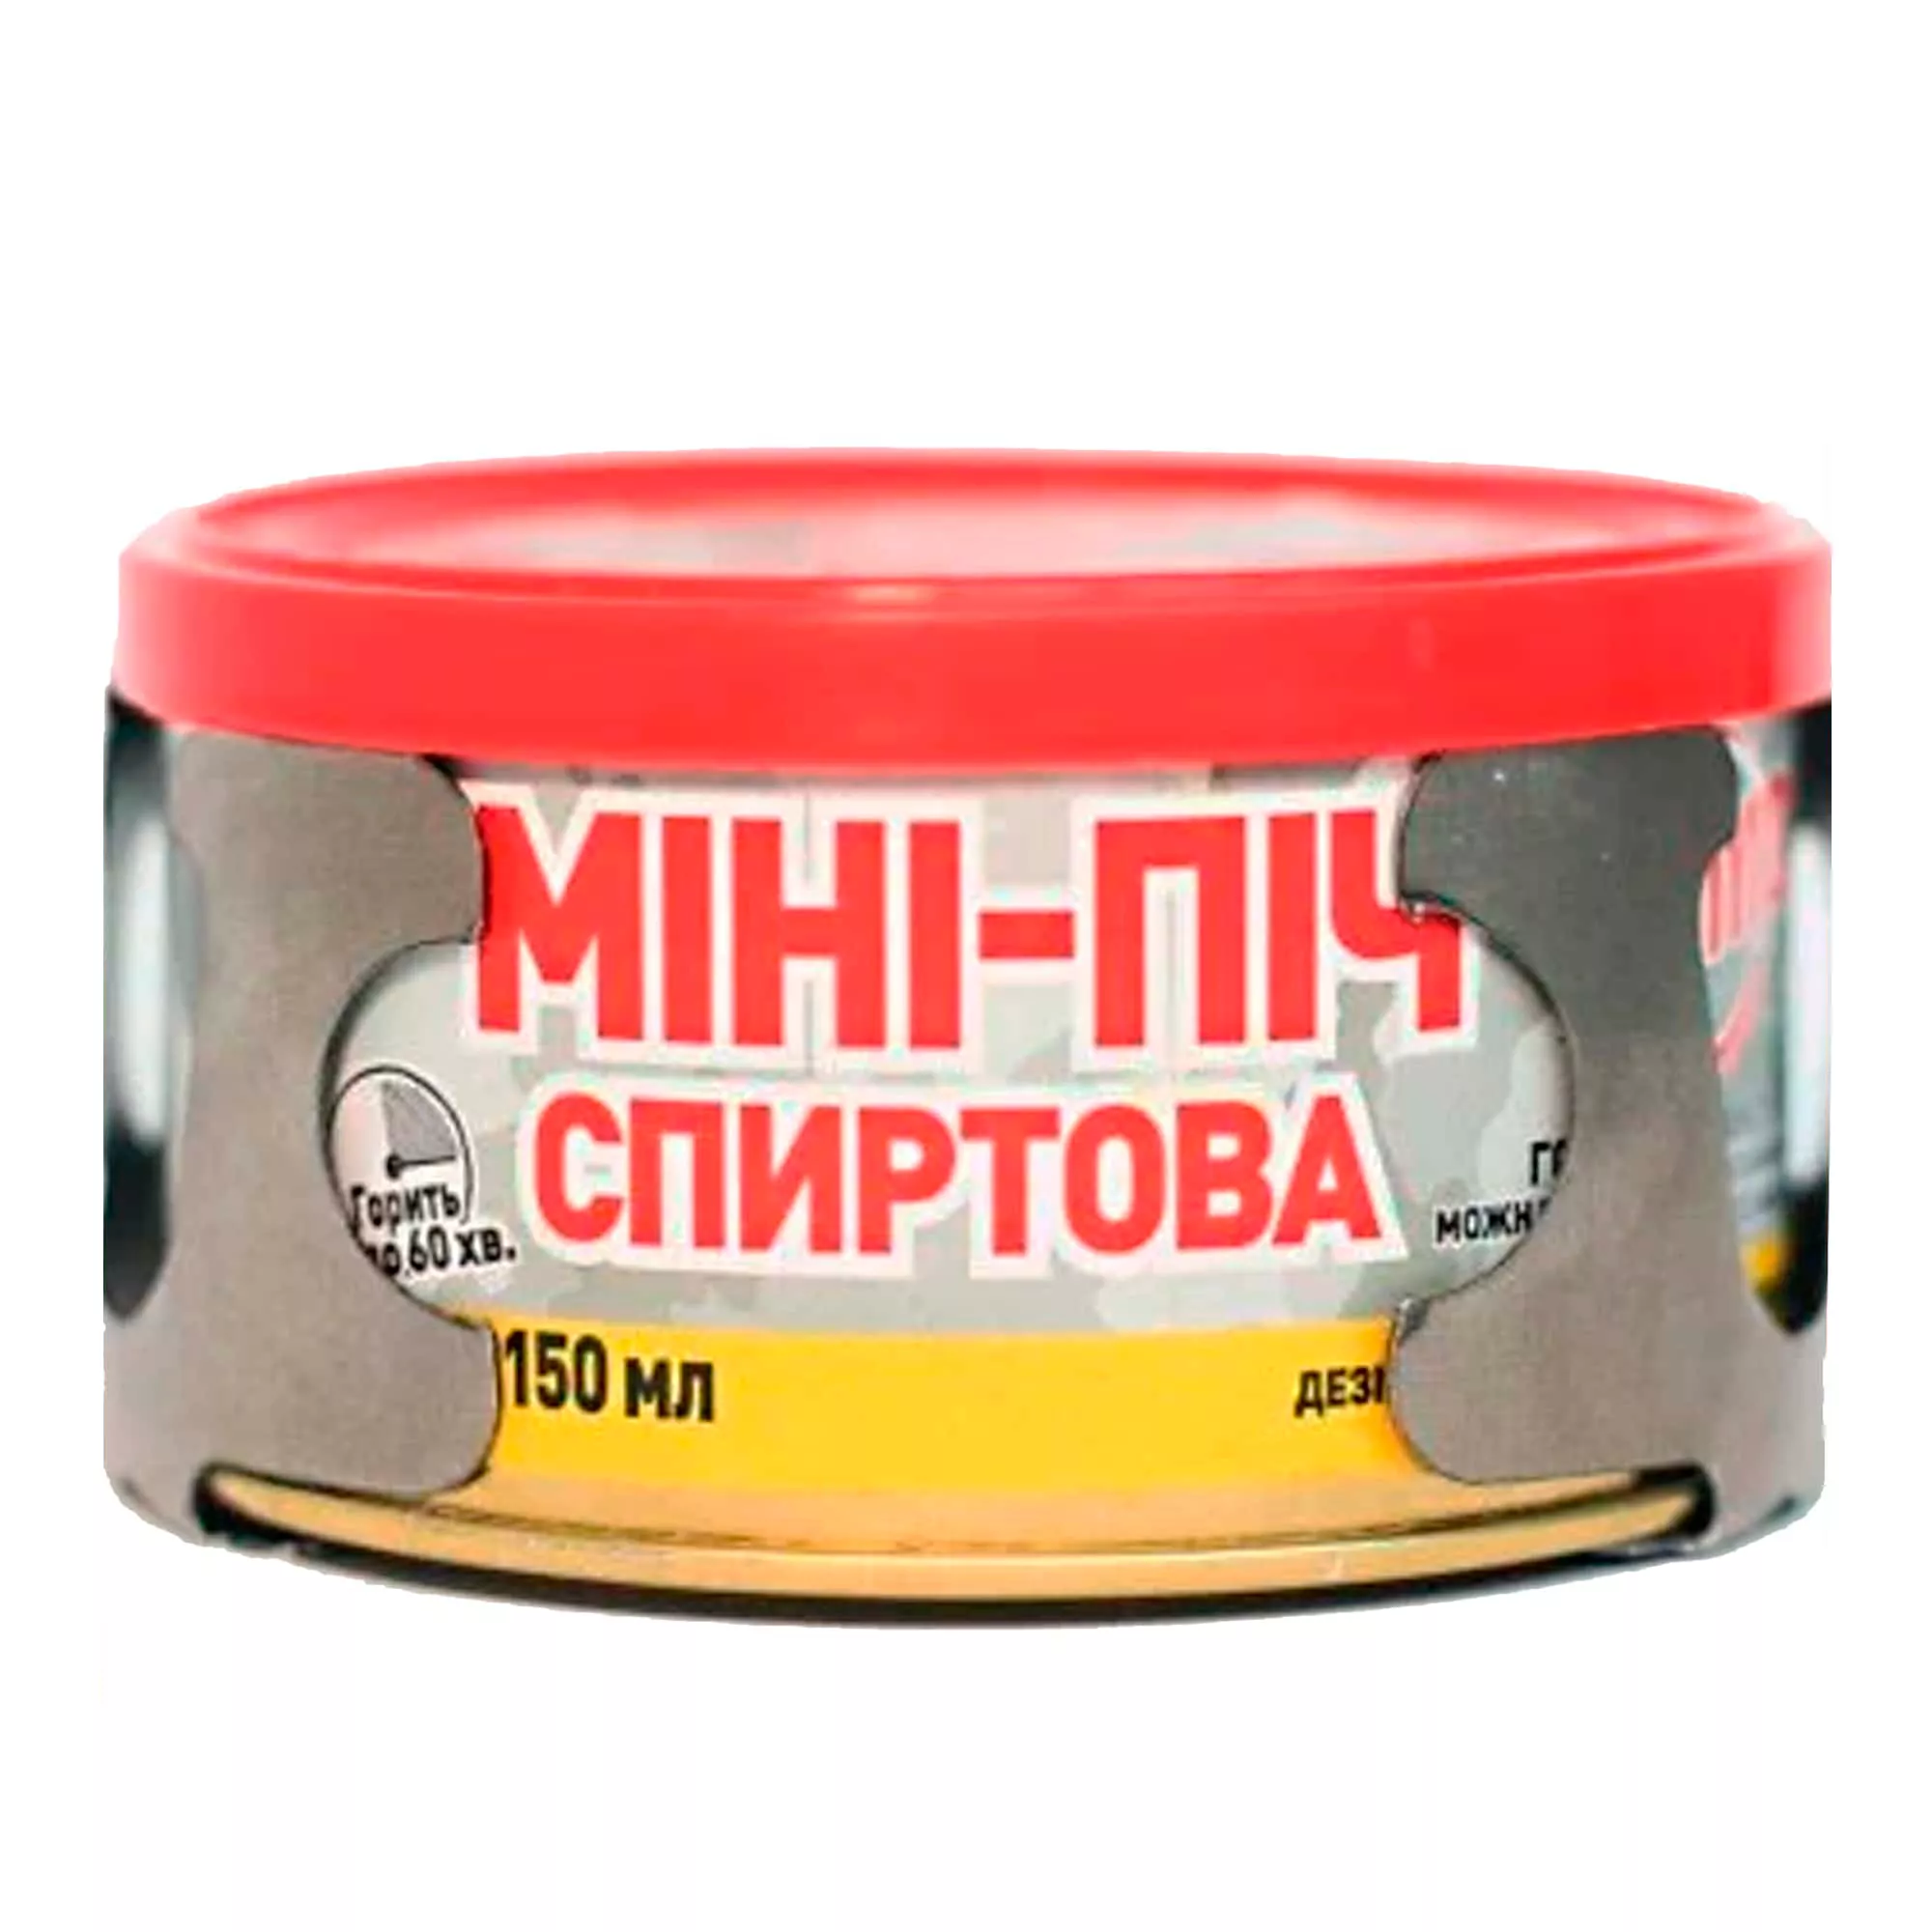 Мини-печь спиртовая с конфоркой 150 мл (830685)